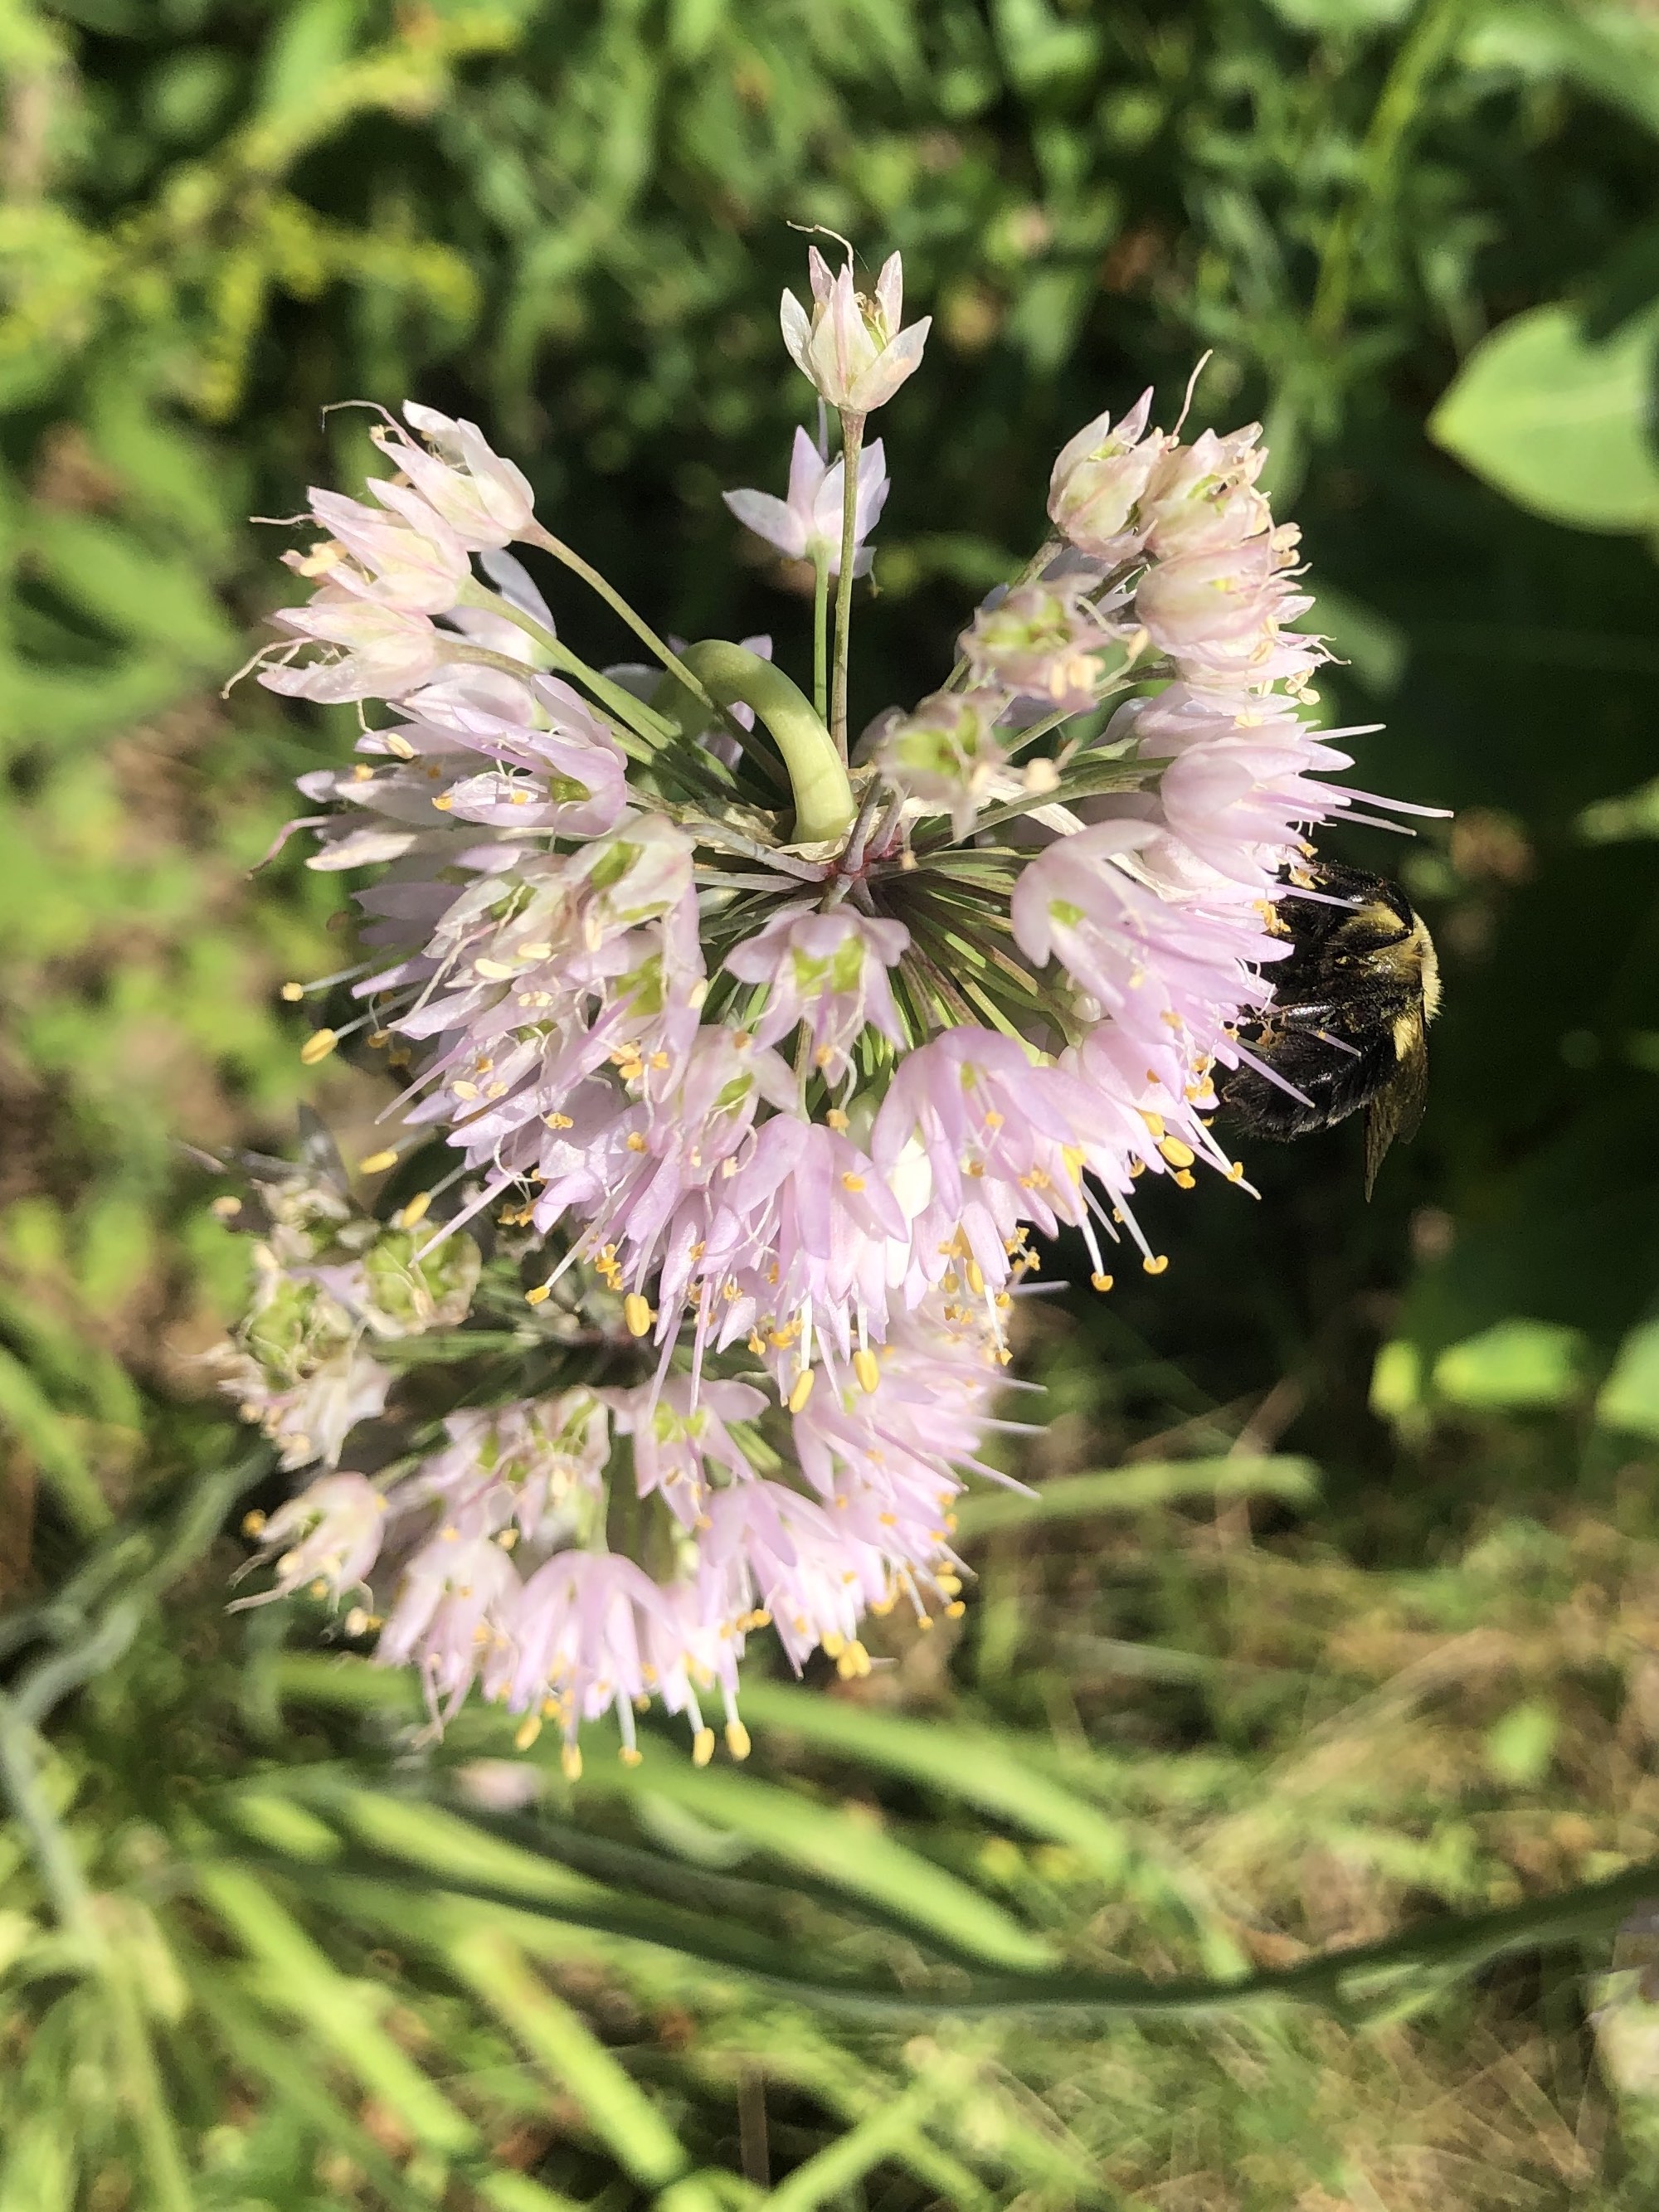 Nodding Wild Onion in UW Arboretum's Native Garden in Madison, Wisconsin on August 2, 2021.